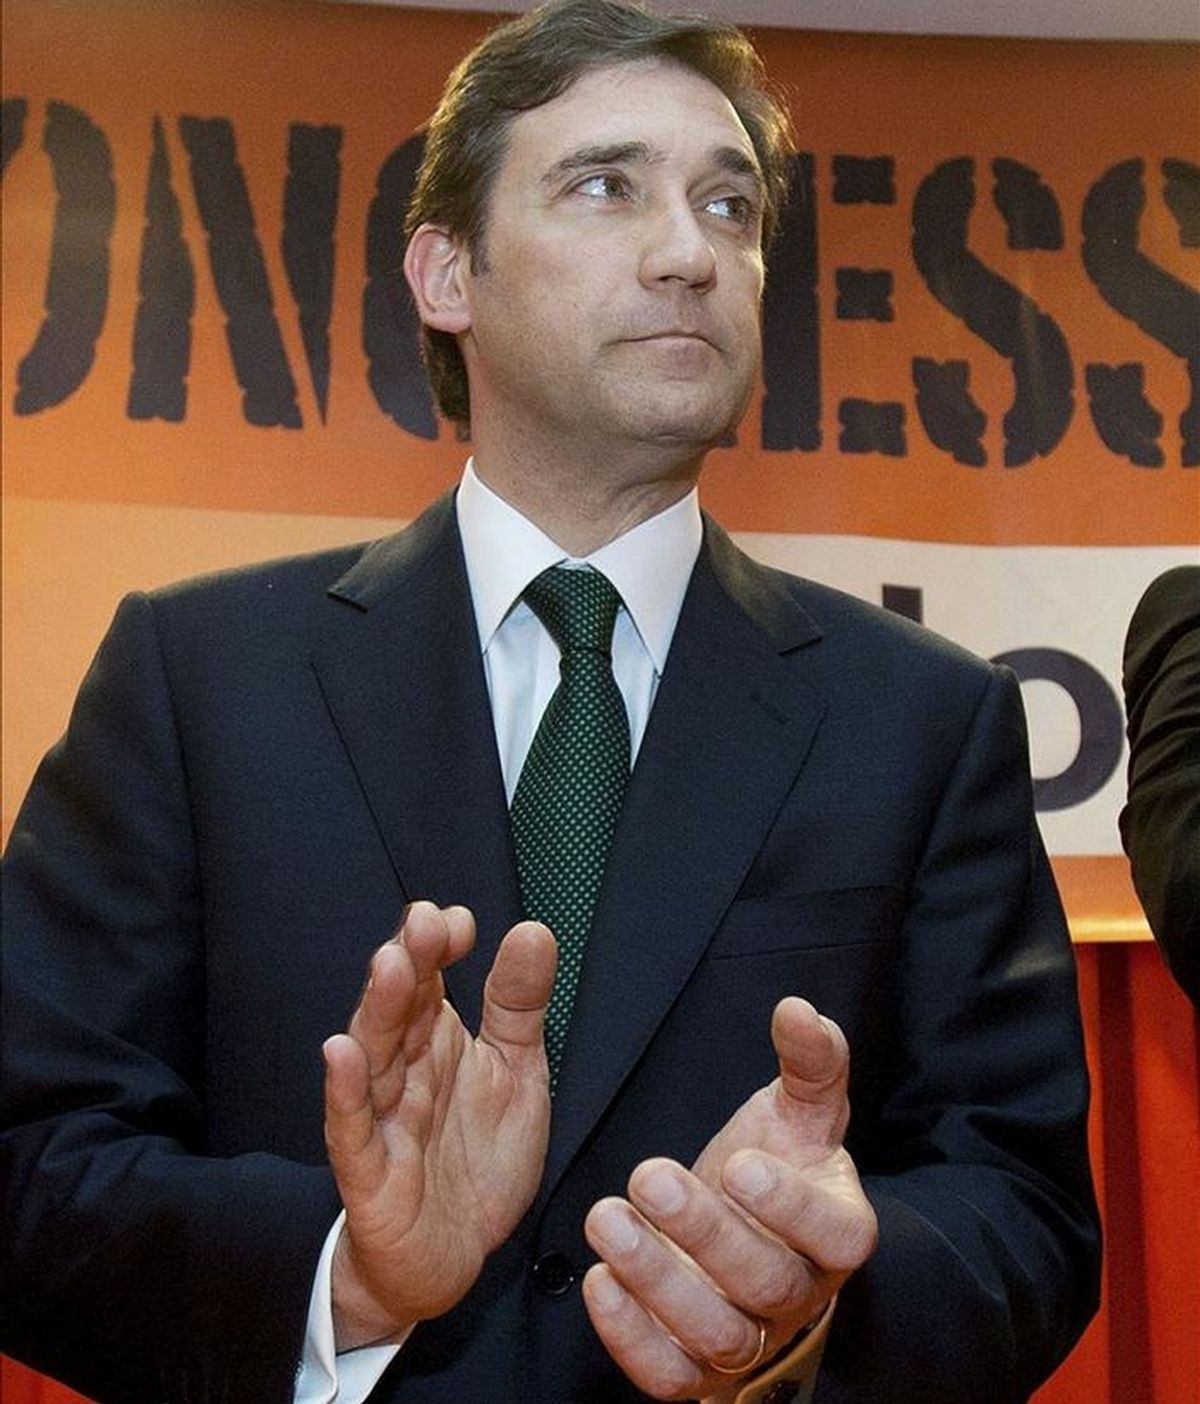 El presidente del opositor Partido Social Demócrata (PSD), Pedro Passos Coelho. EFE/Archivo